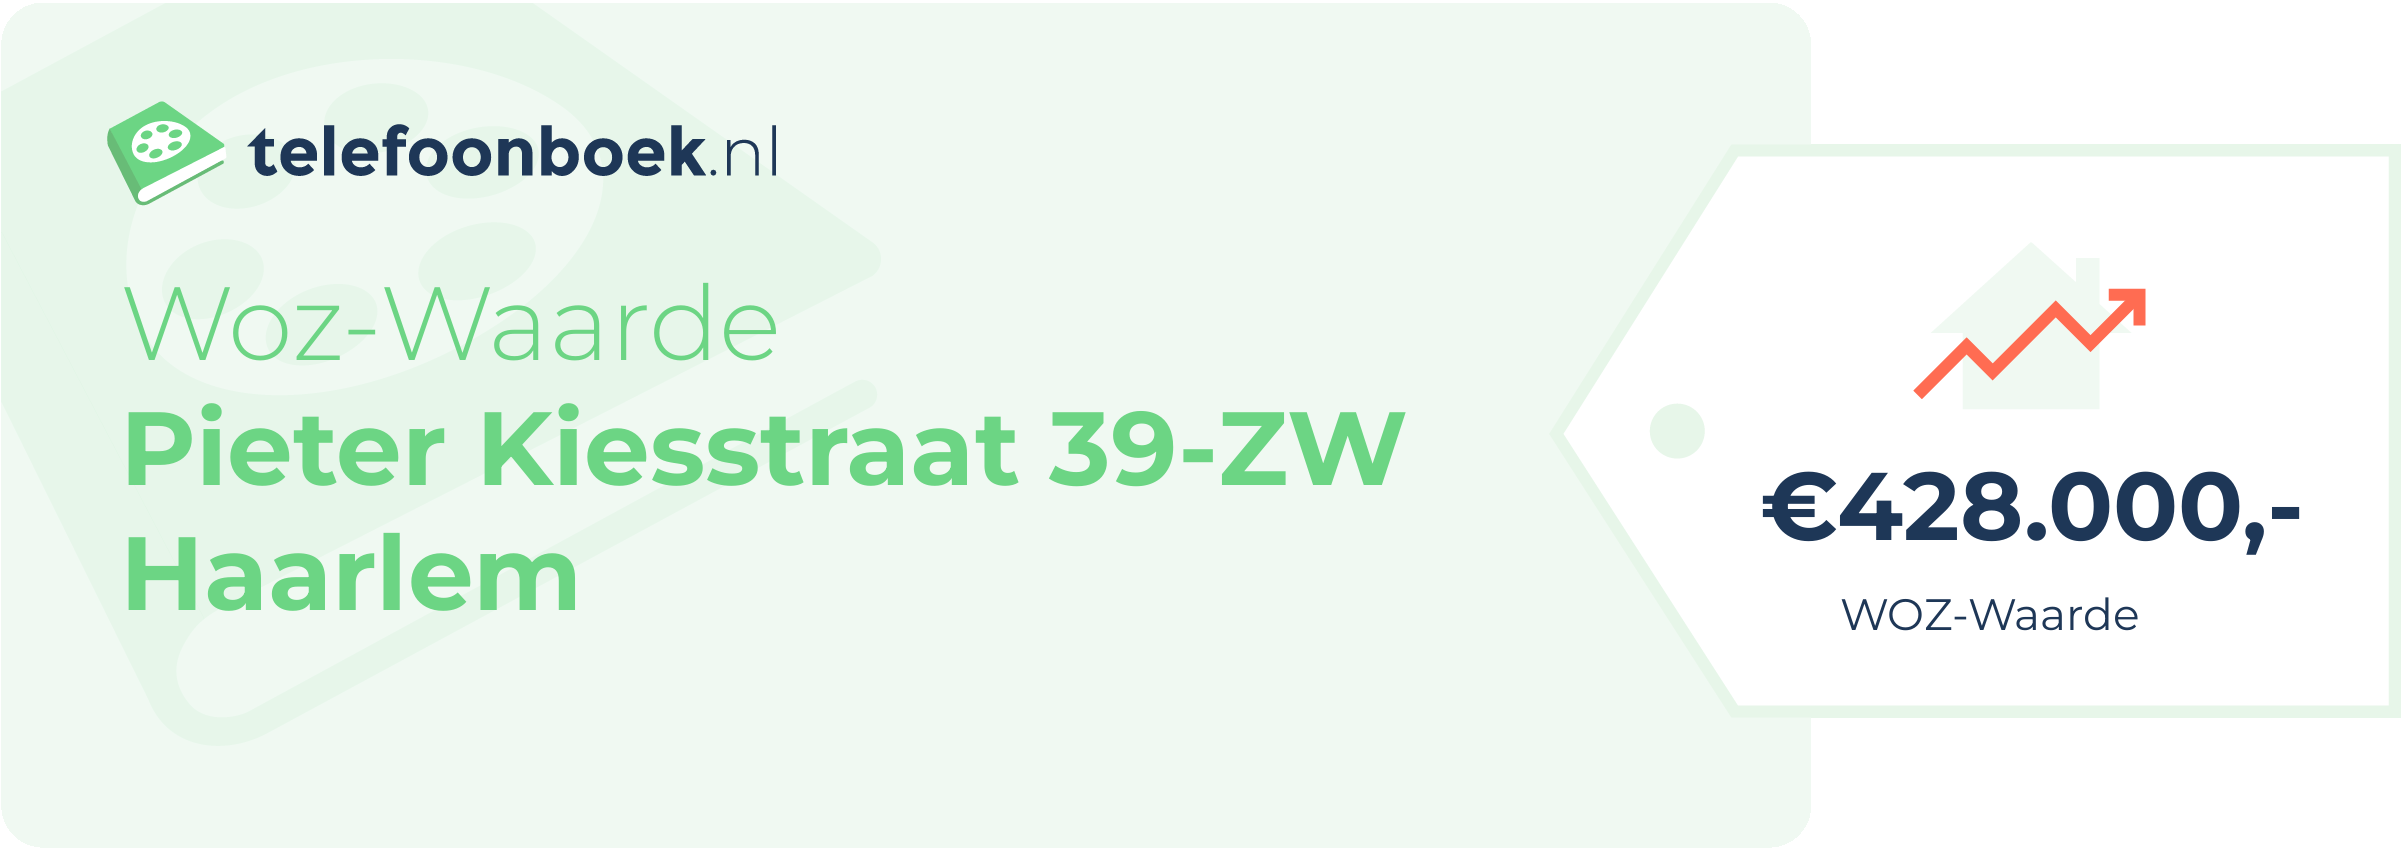 WOZ-waarde Pieter Kiesstraat 39-ZW Haarlem